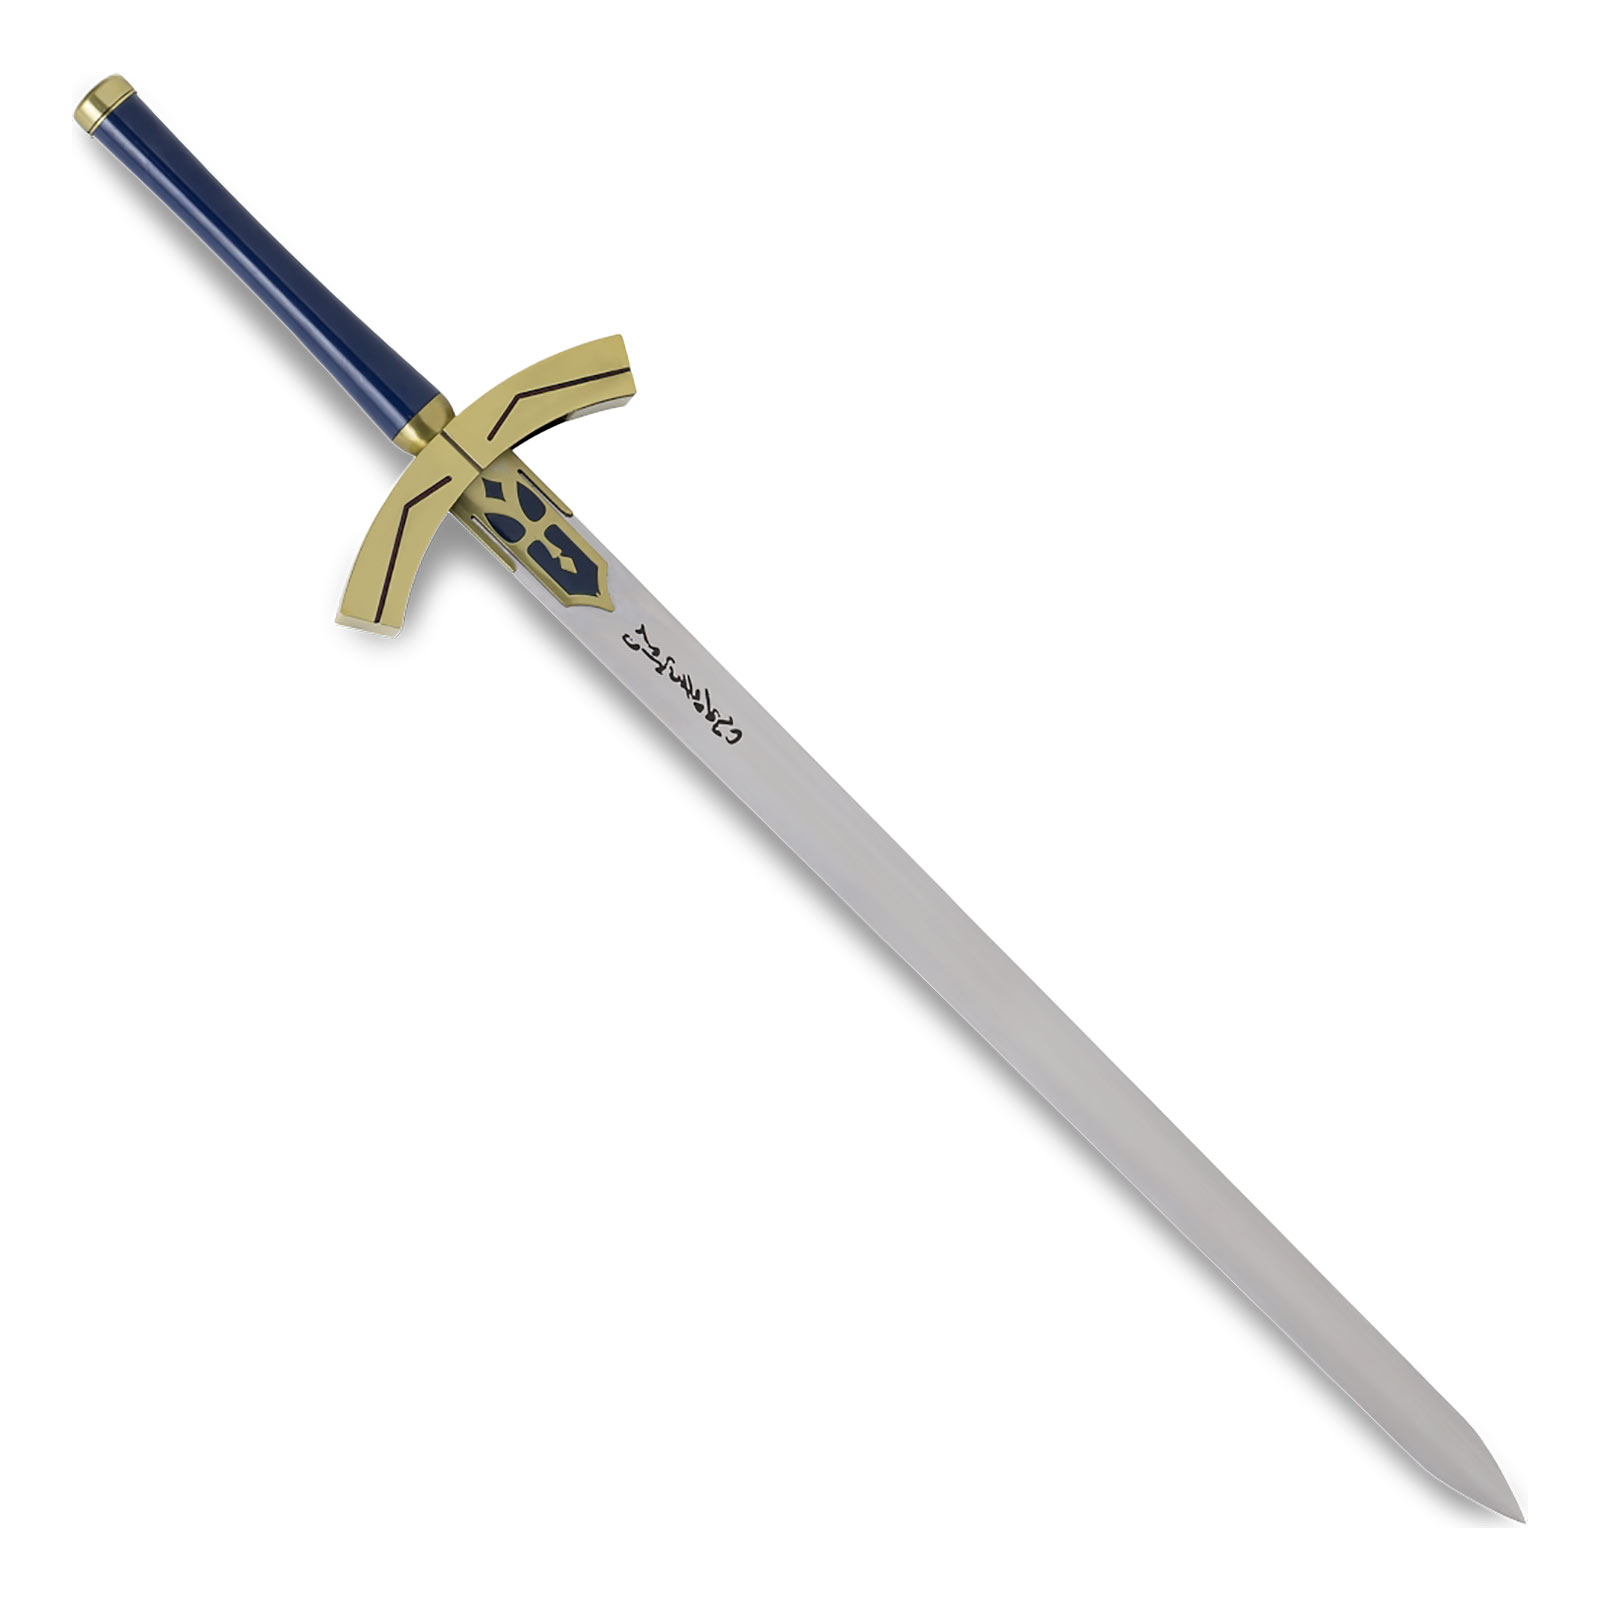 Saber Excalibur Schwert für Fate/Stay Night Fans